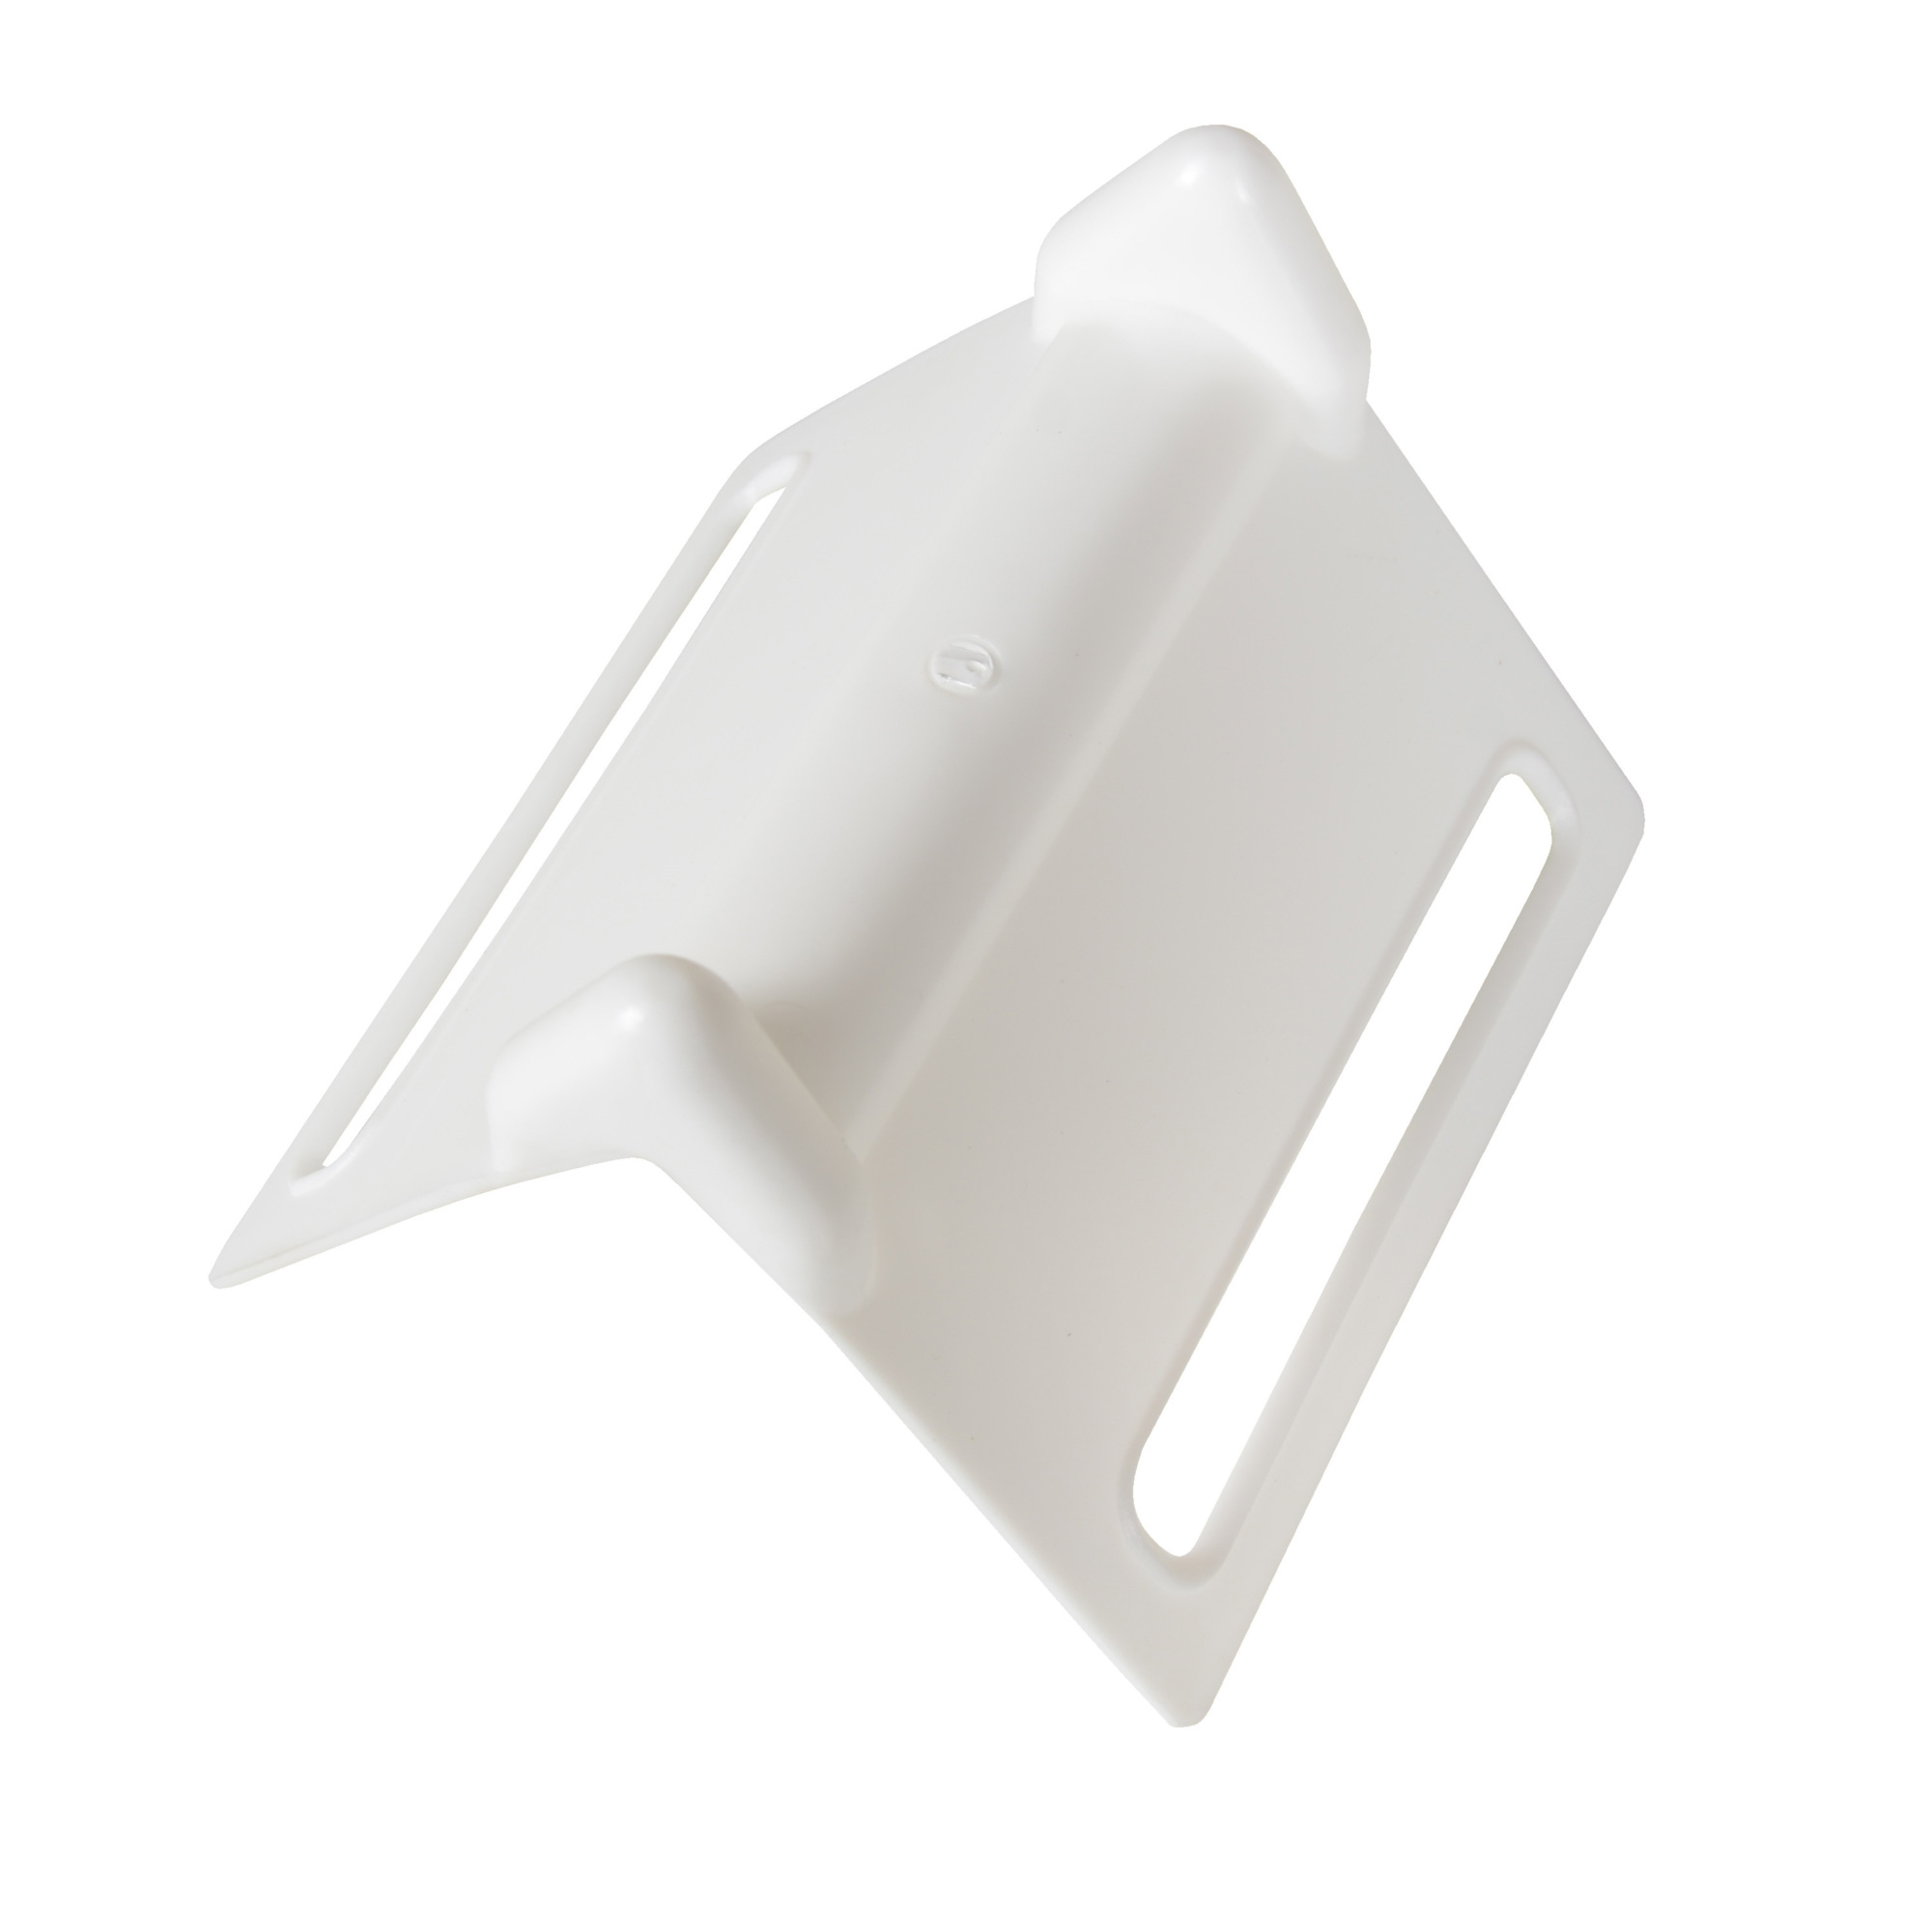 Vestil, Plastic edge guards 100 pack white, Height 5.19 in, Length 4.25 in, Model EDGE-P5